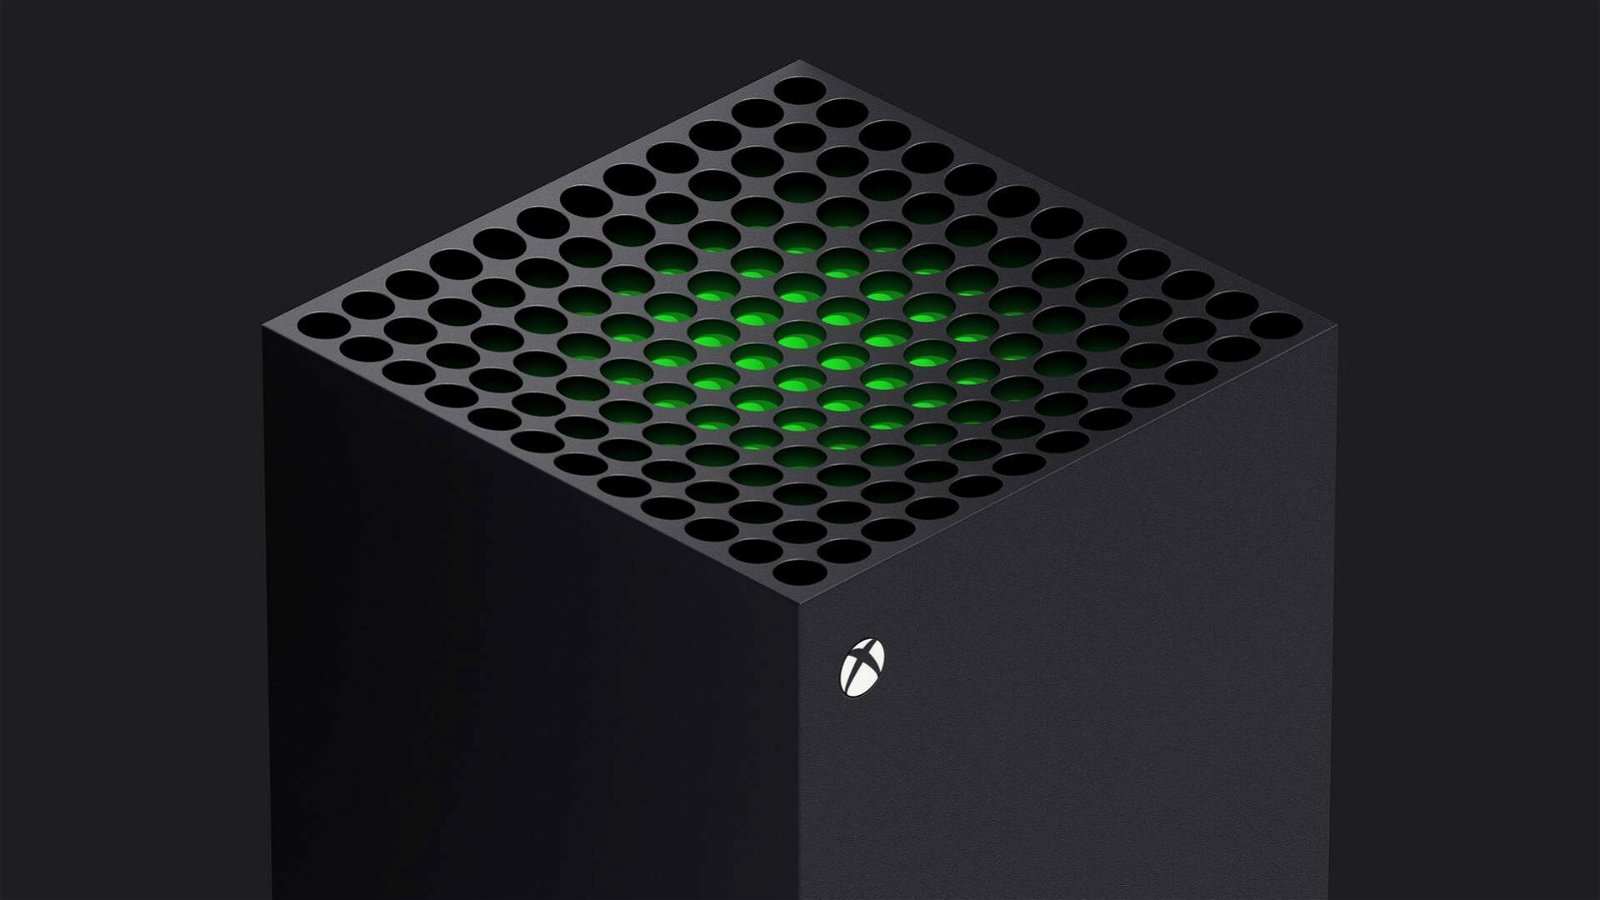 Immagine di Xbox si apre alle mod? Microsoft starebbe pensando alla sua nuova piattaforma